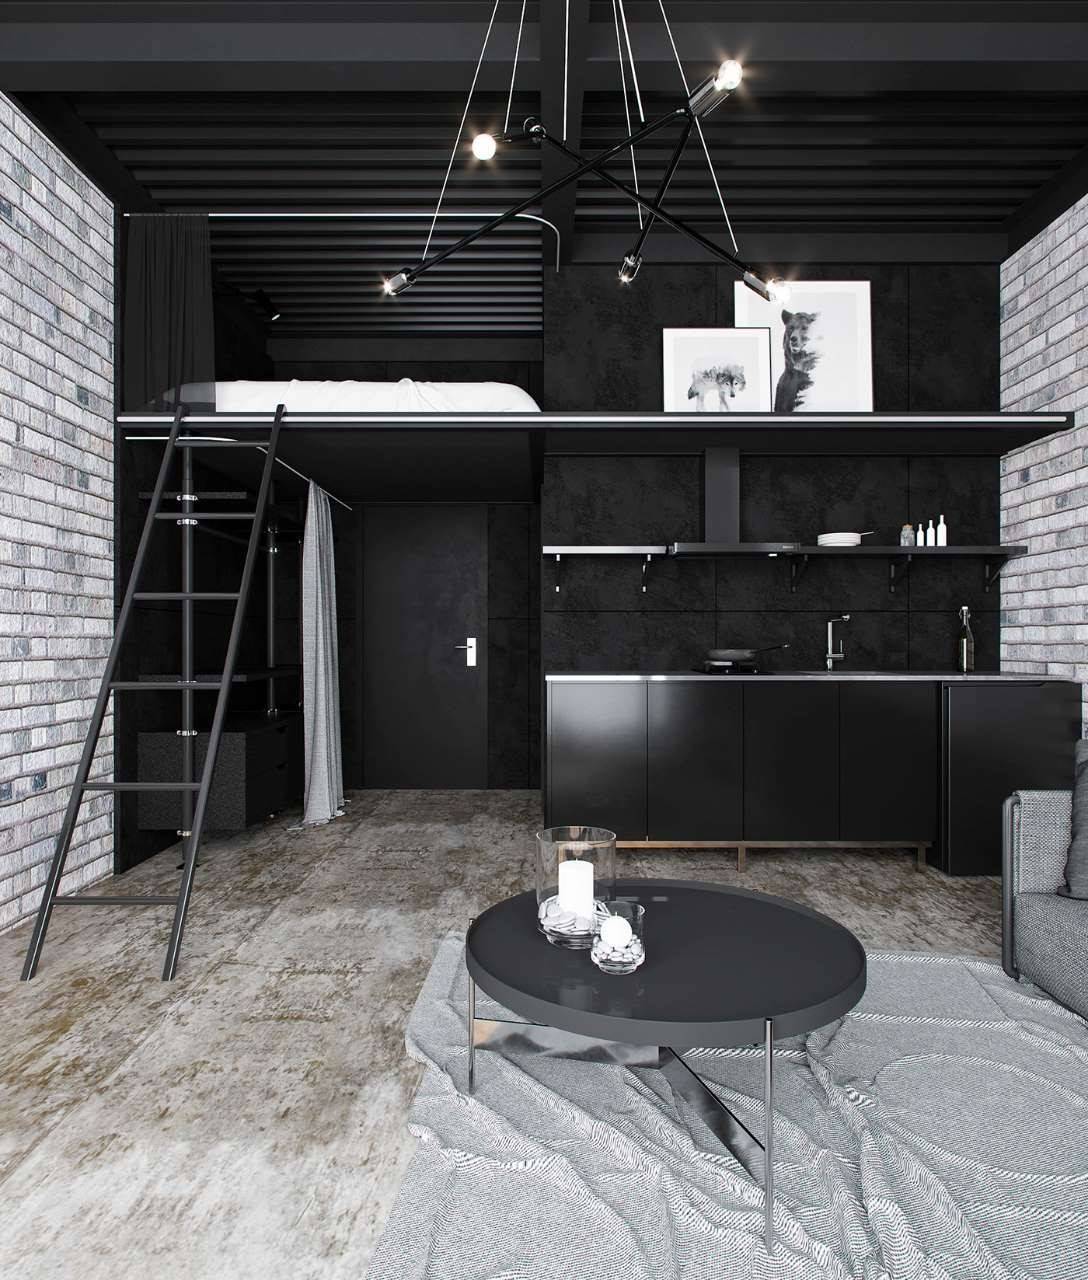 Ý tưởng thiết kế căn hộ studioo nhỏ màu đen cá tính